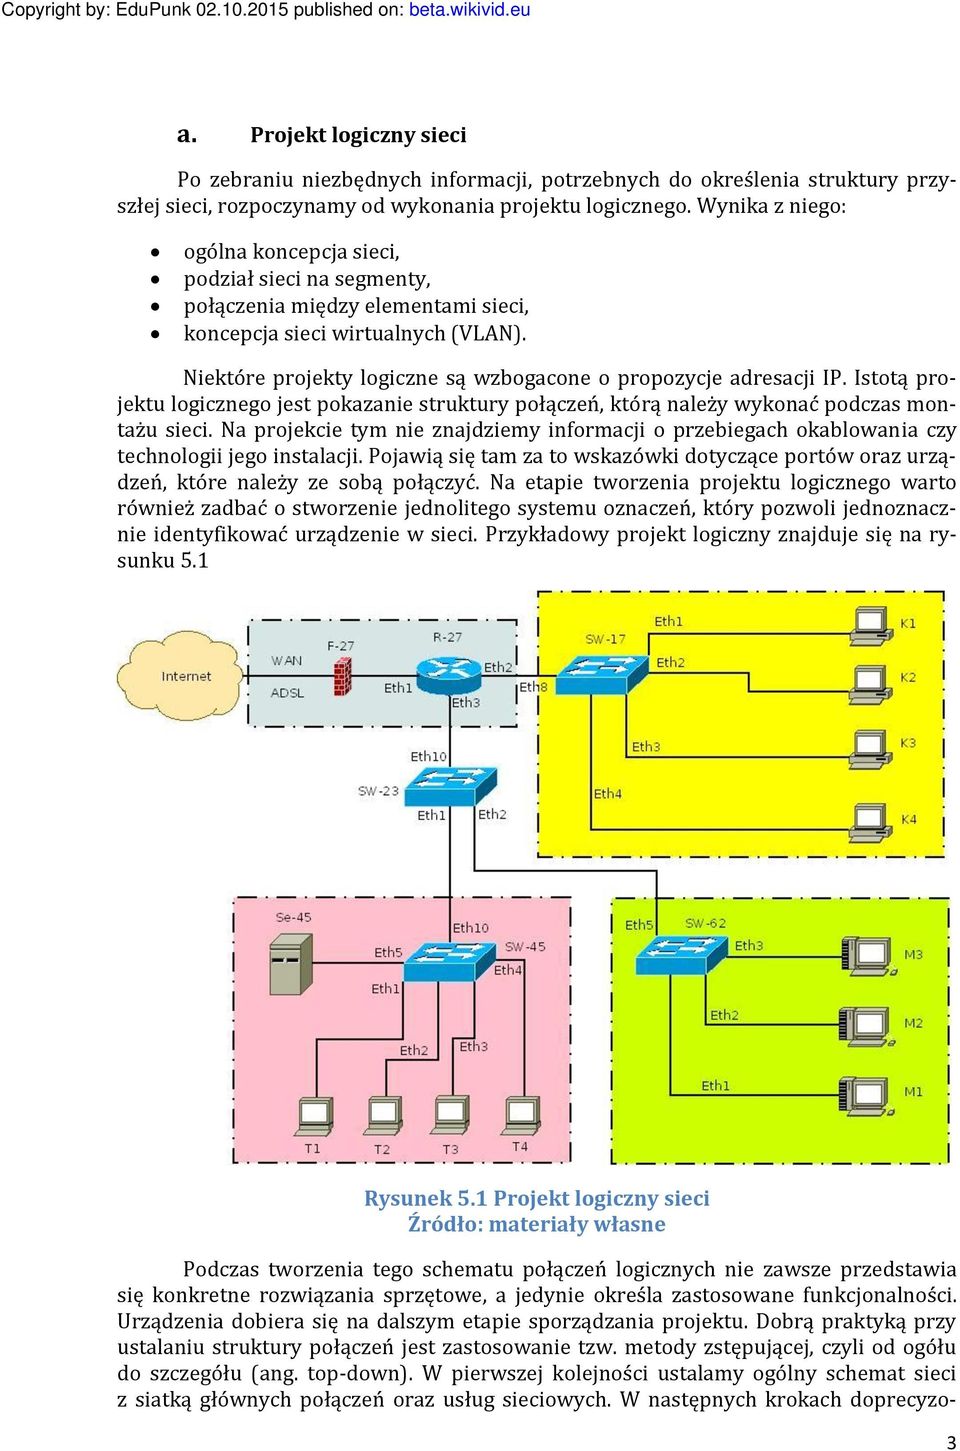 Niektóre projekty logiczne są wzbogacone o propozycje adresacji IP. Istotą projektu logicznego jest pokazanie struktury połączeń, którą należy wykonać podczas montażu sieci.